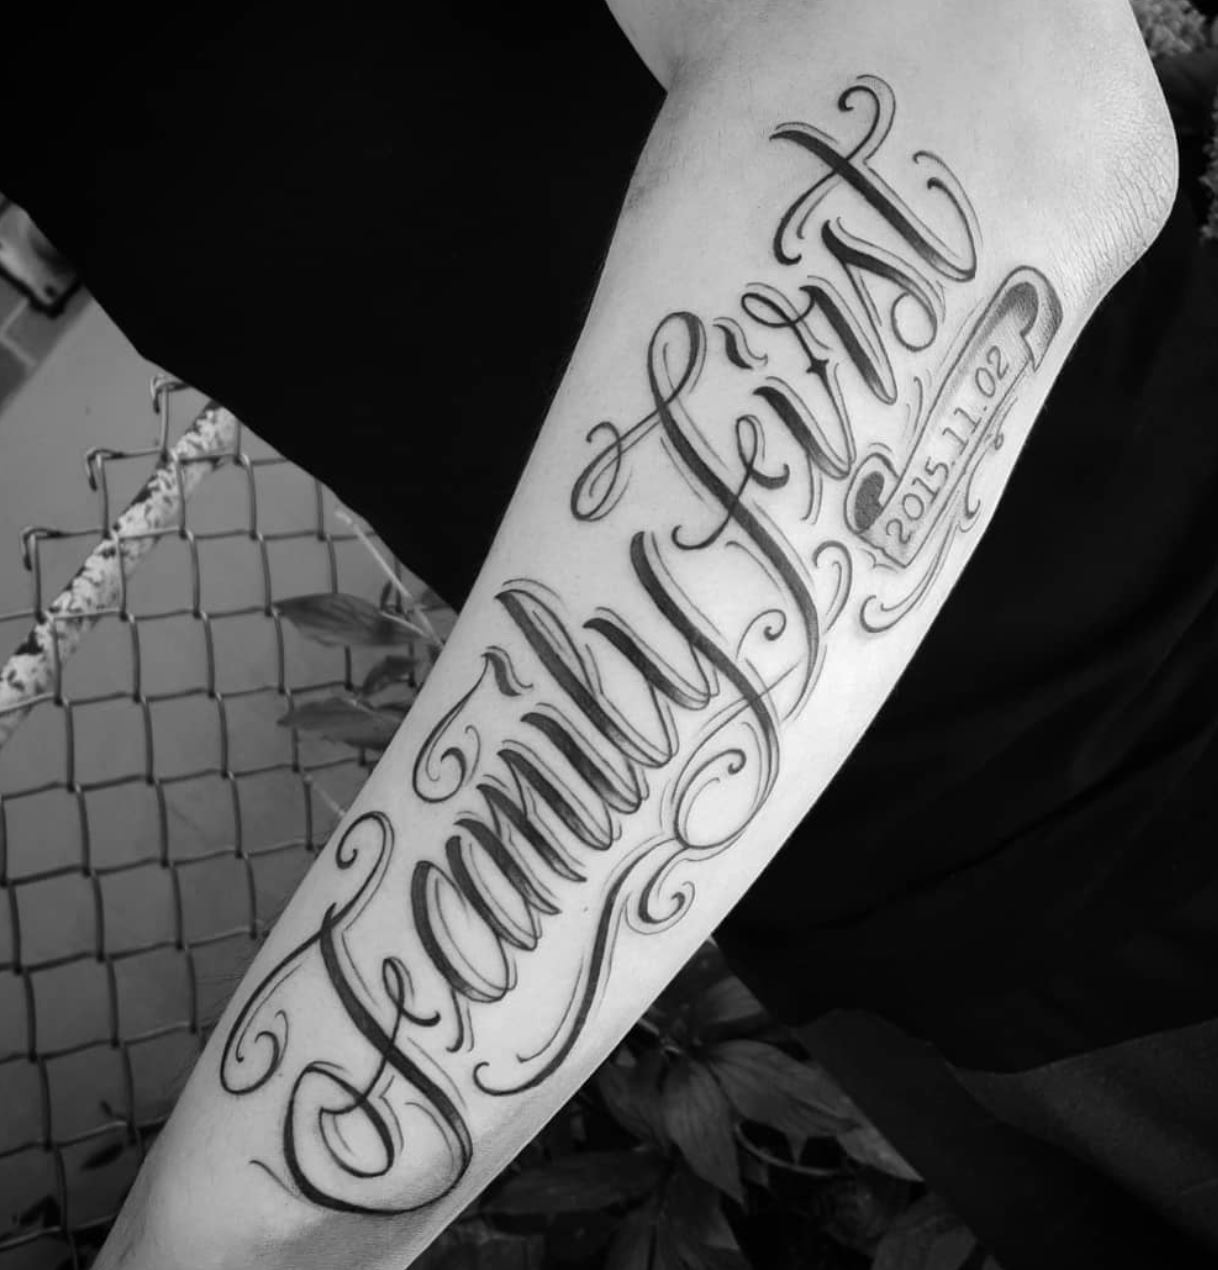 Chronic Ink Tattoos on Twitter Family first custom script by Steve Chen  WorkProud WearProud httpstco9I5JgFdbEE  Twitter